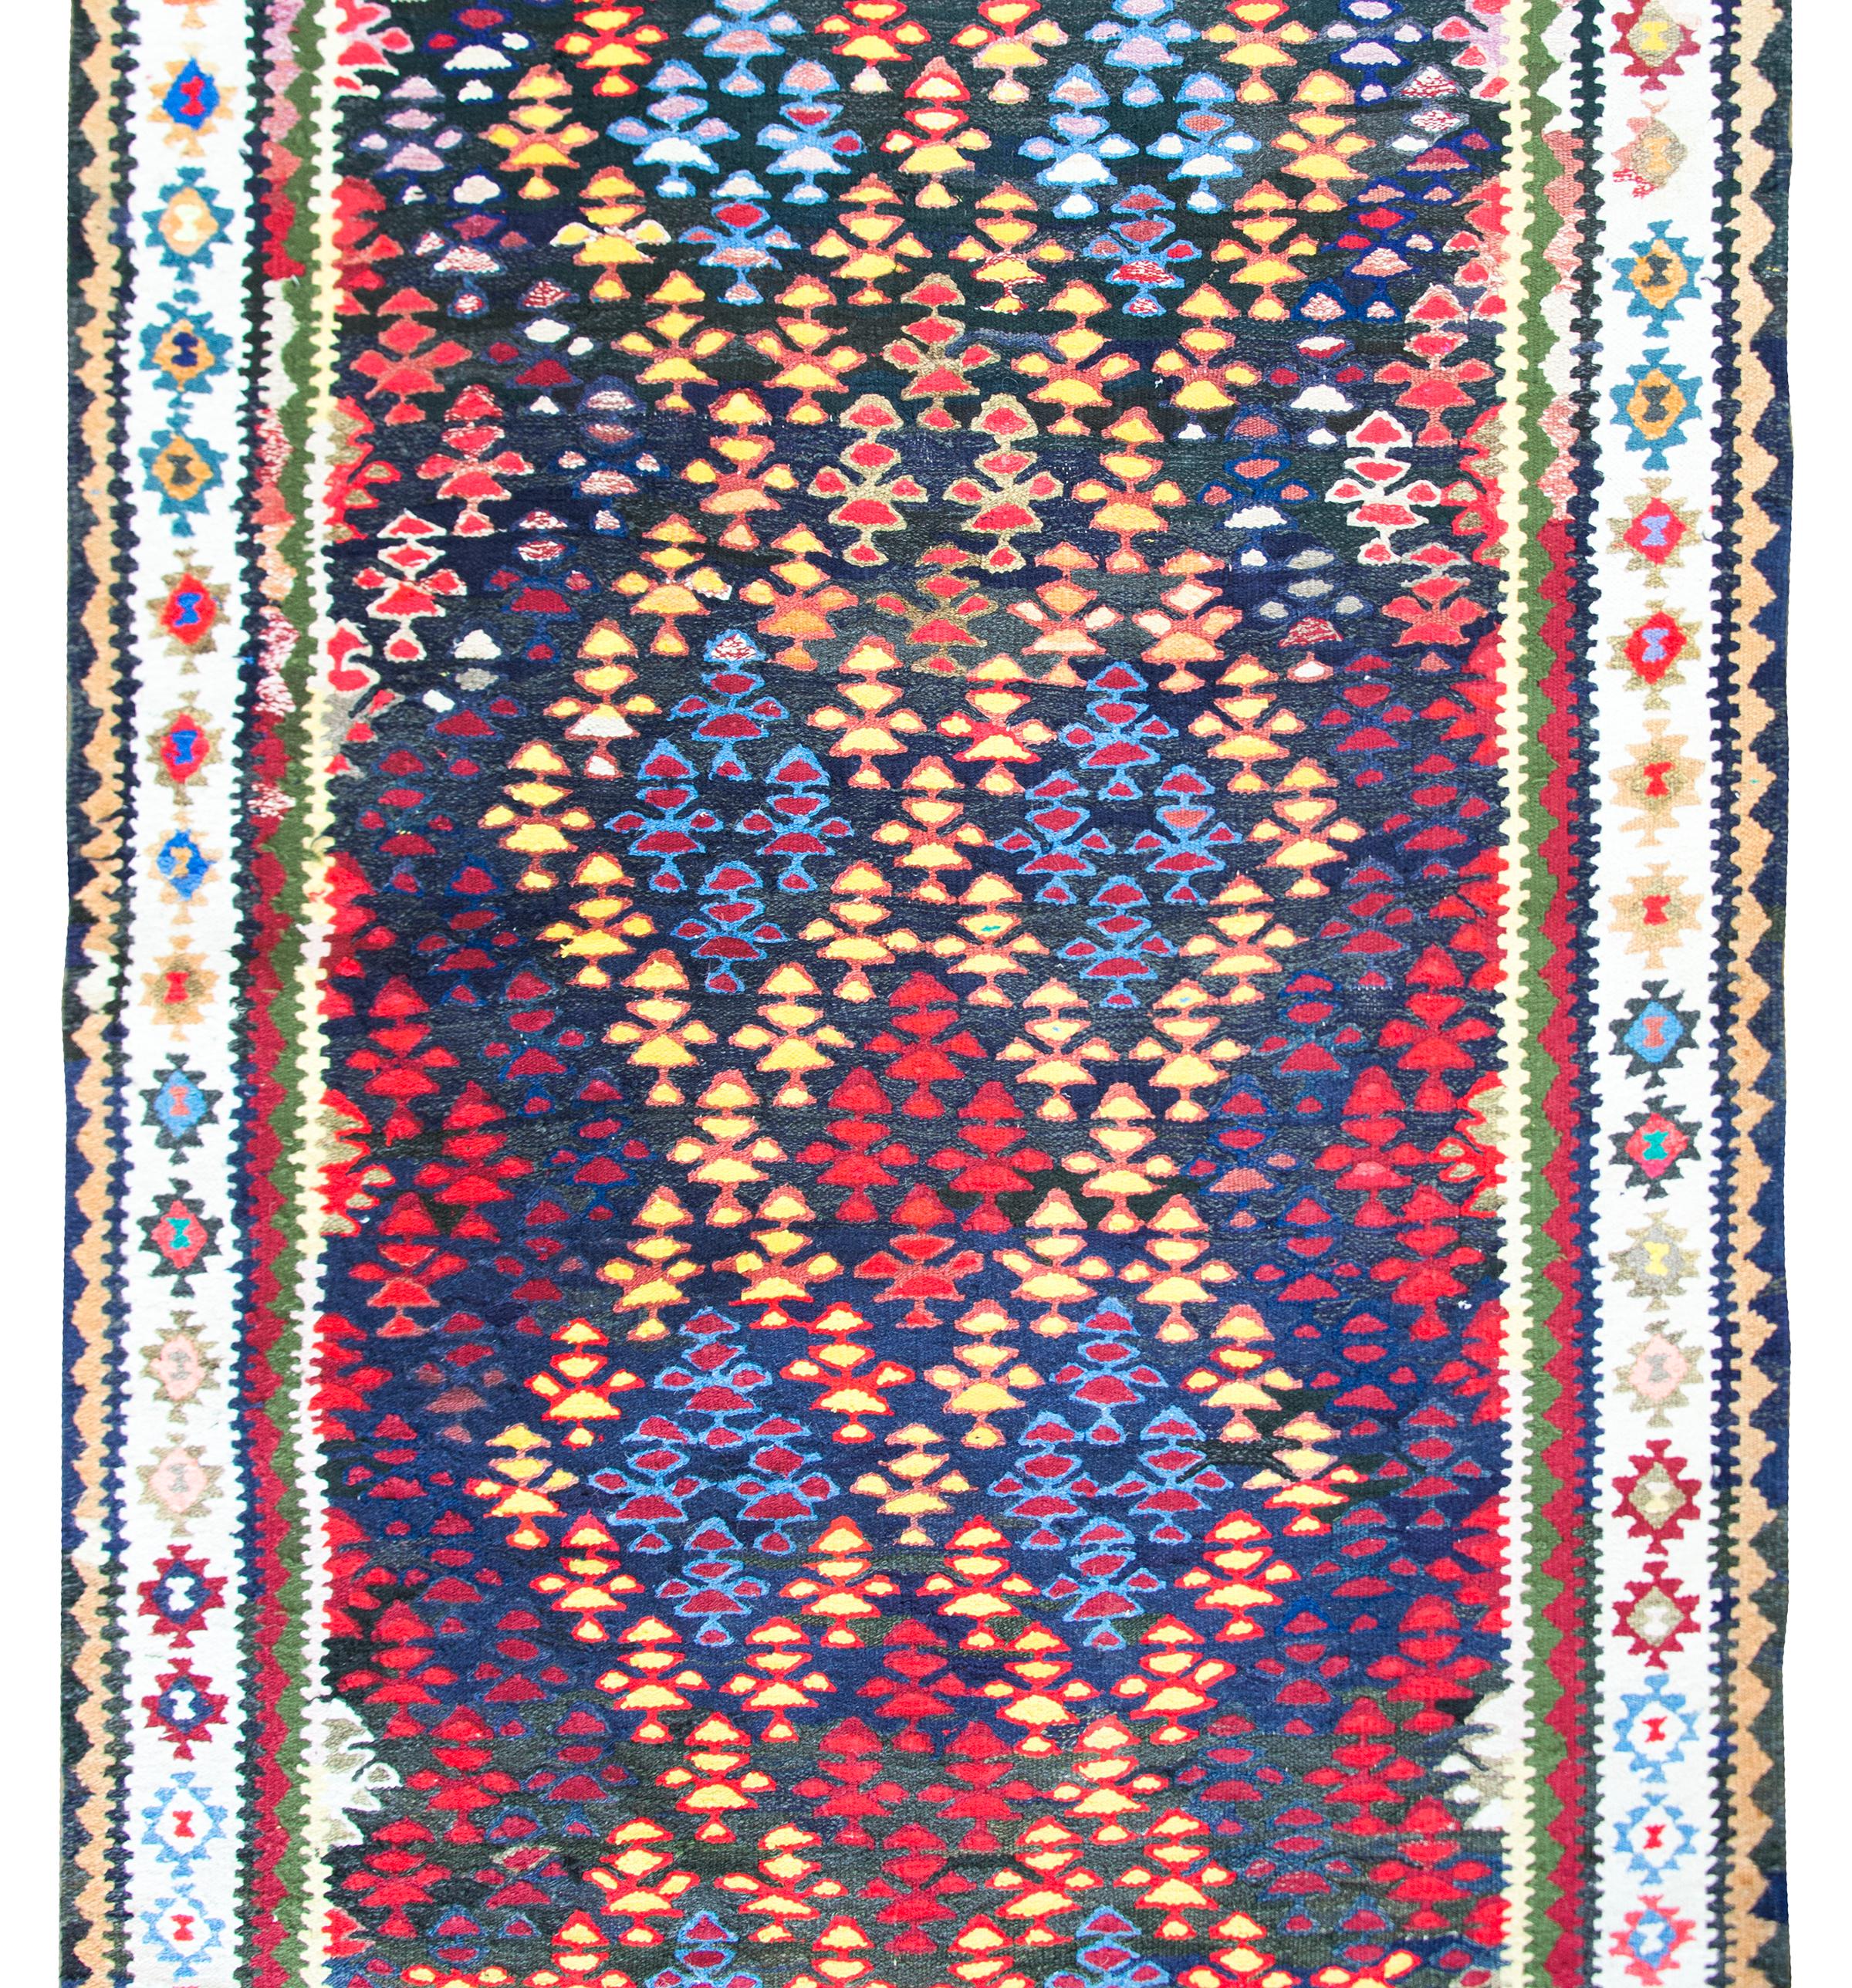 Ein wunderschöner alter persischer Qazvin-Kelim-Teppich mit bunten Lebensbäumen in einem Muster aus sich kreuzenden Streifen, die Rauten und ein Spaliermuster bilden, umgeben von einer komplexen Bordüre aus stilisierten Blumen und geometrischen